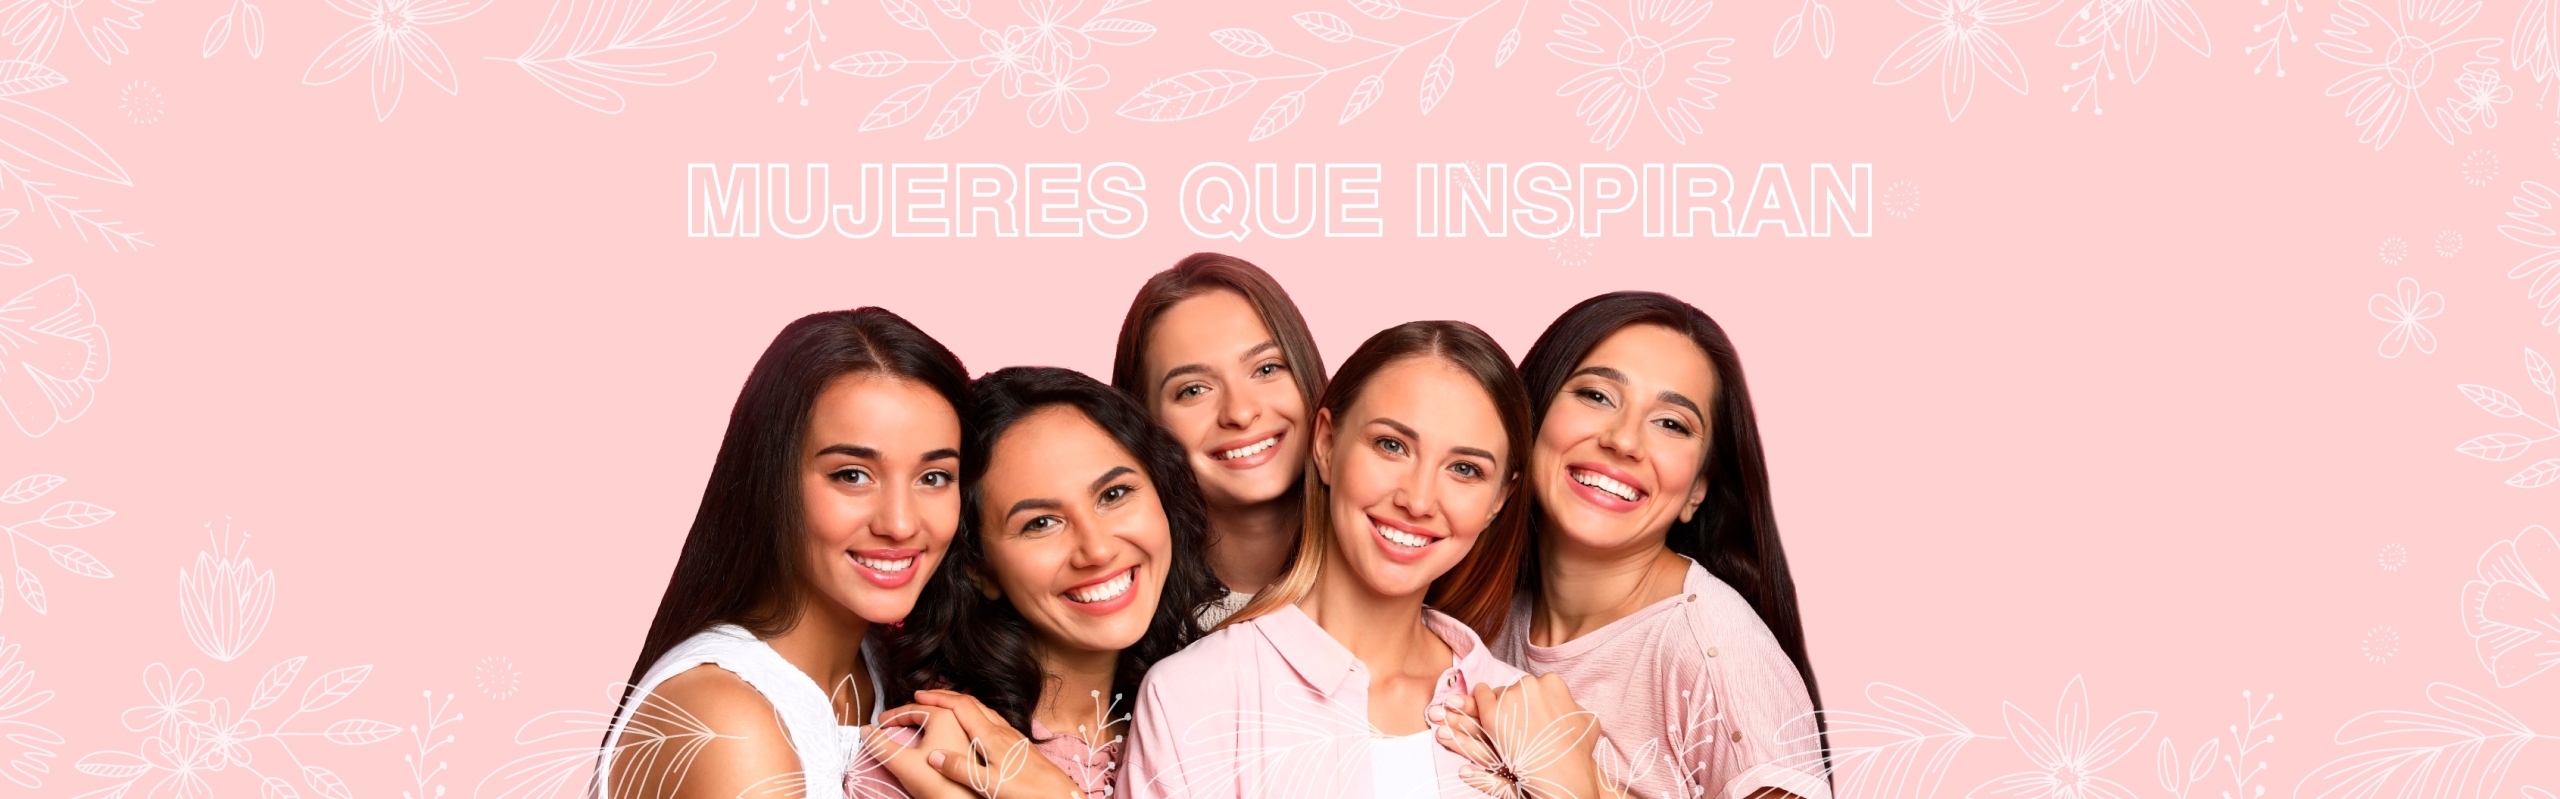 Mujeres que inspiran_811x253px_apto mobile-06